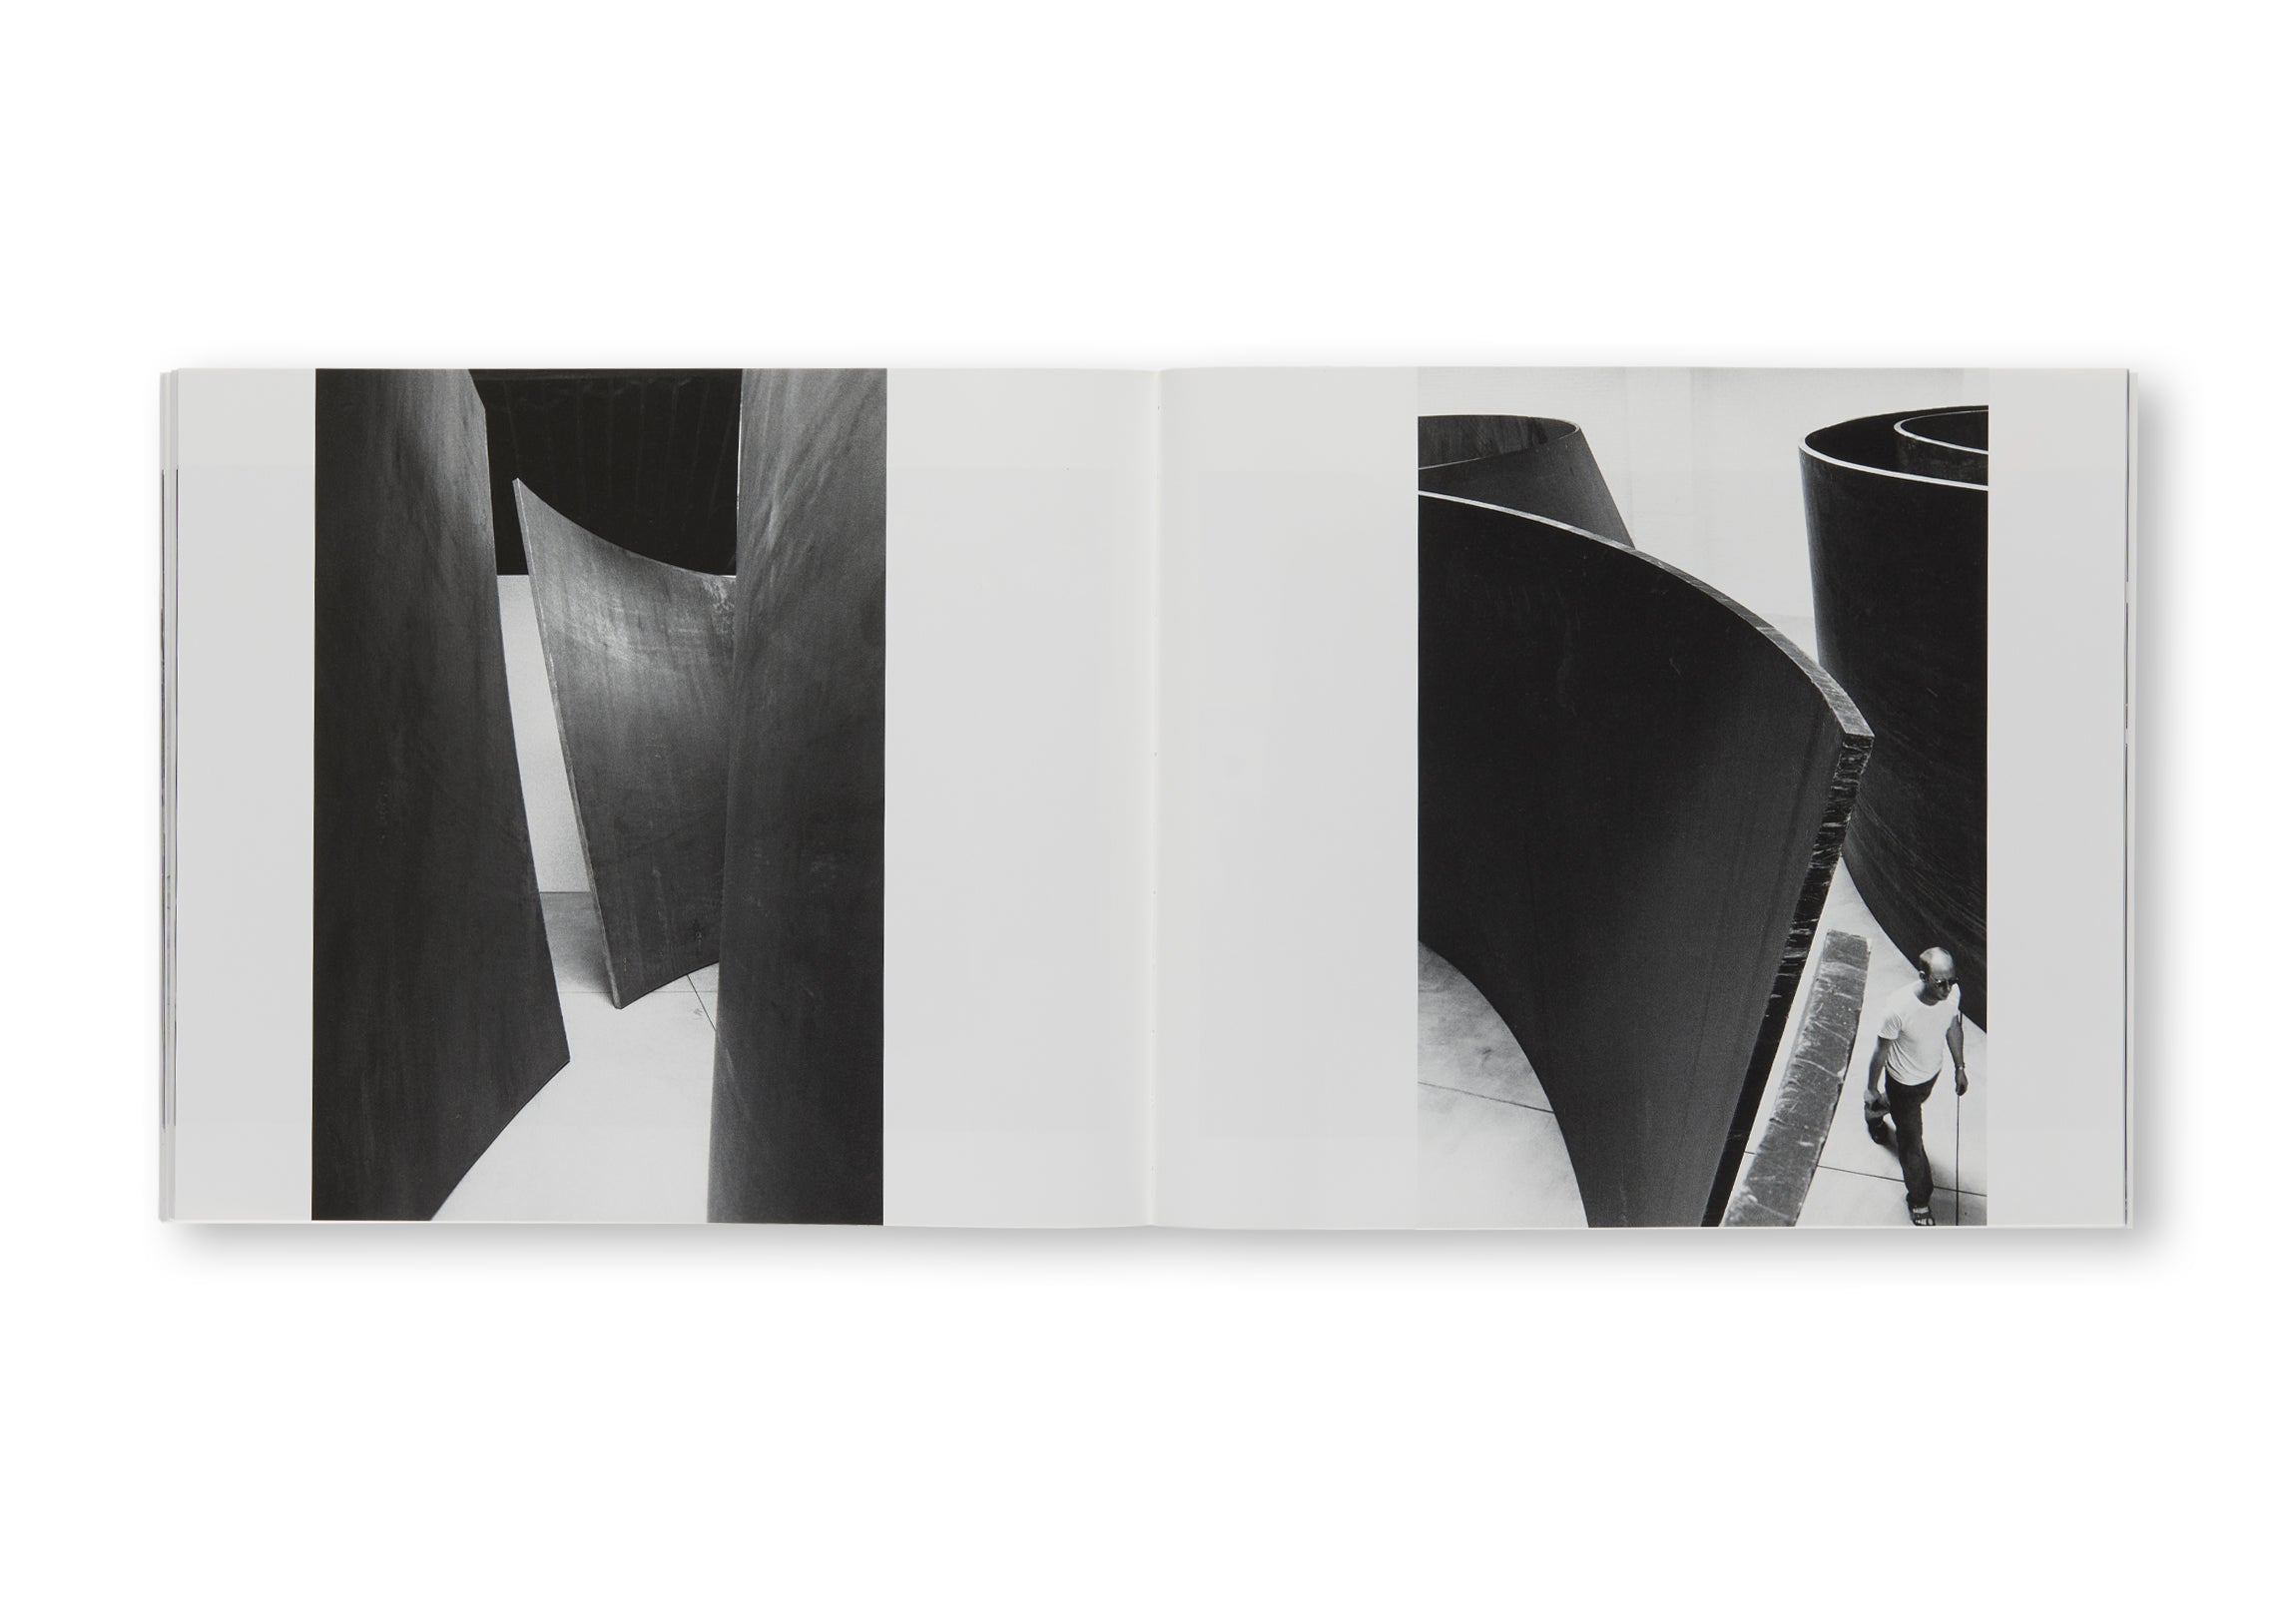 TORQUED ELLIPSES by Richard Serra